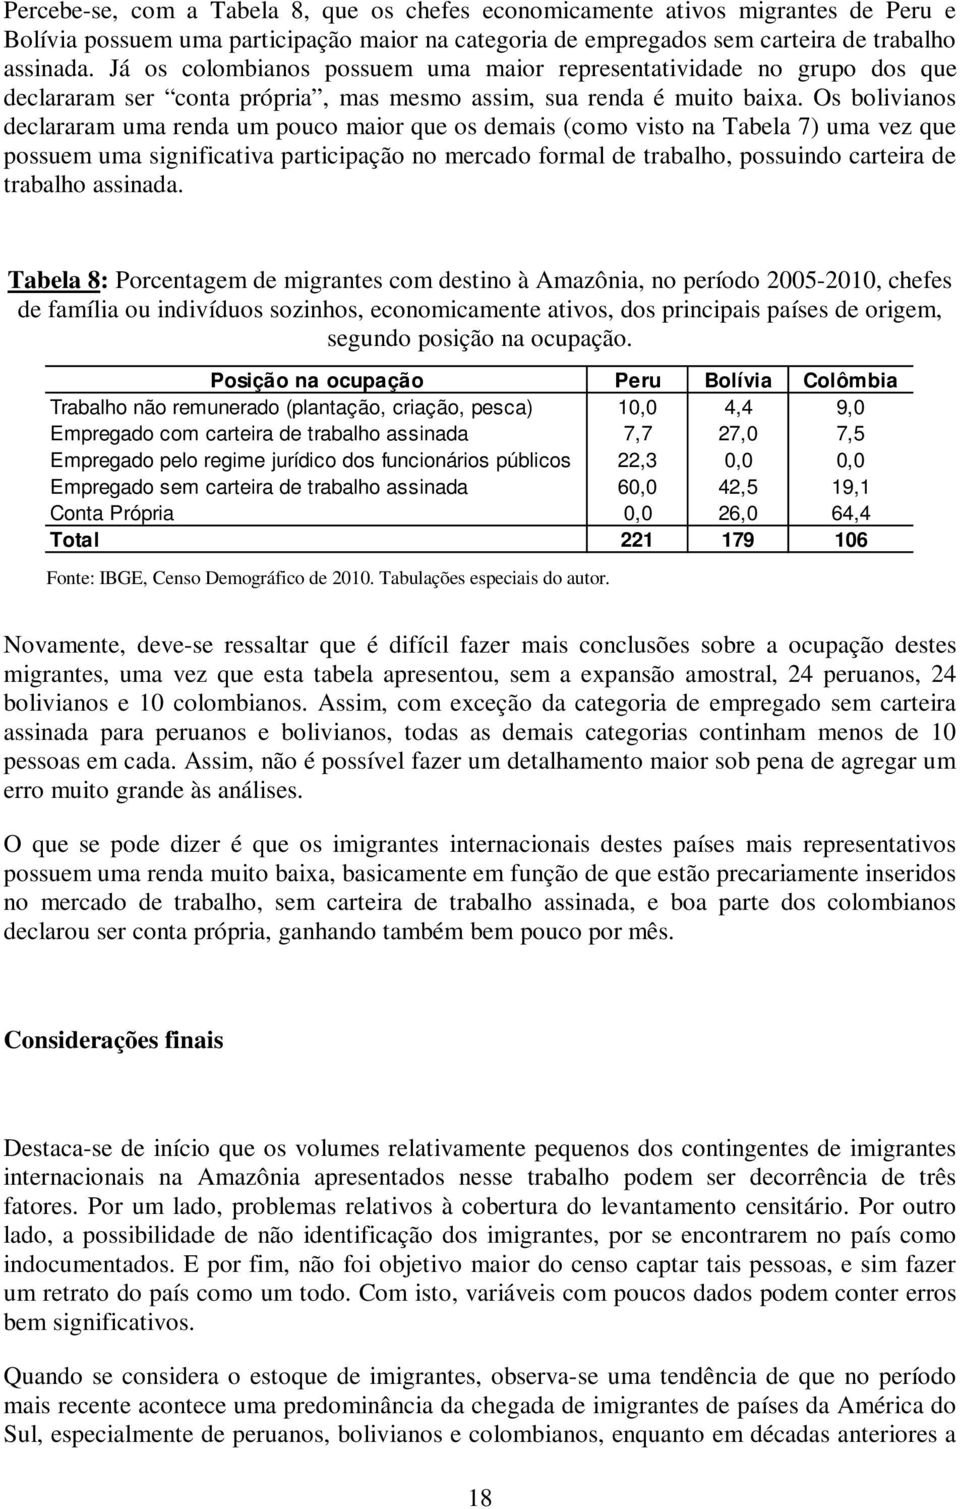 Os bolivianos declararam uma renda um pouco maior que os demais (como visto na Tabela 7) uma vez que possuem uma significativa participação no mercado formal de trabalho, possuindo carteira de